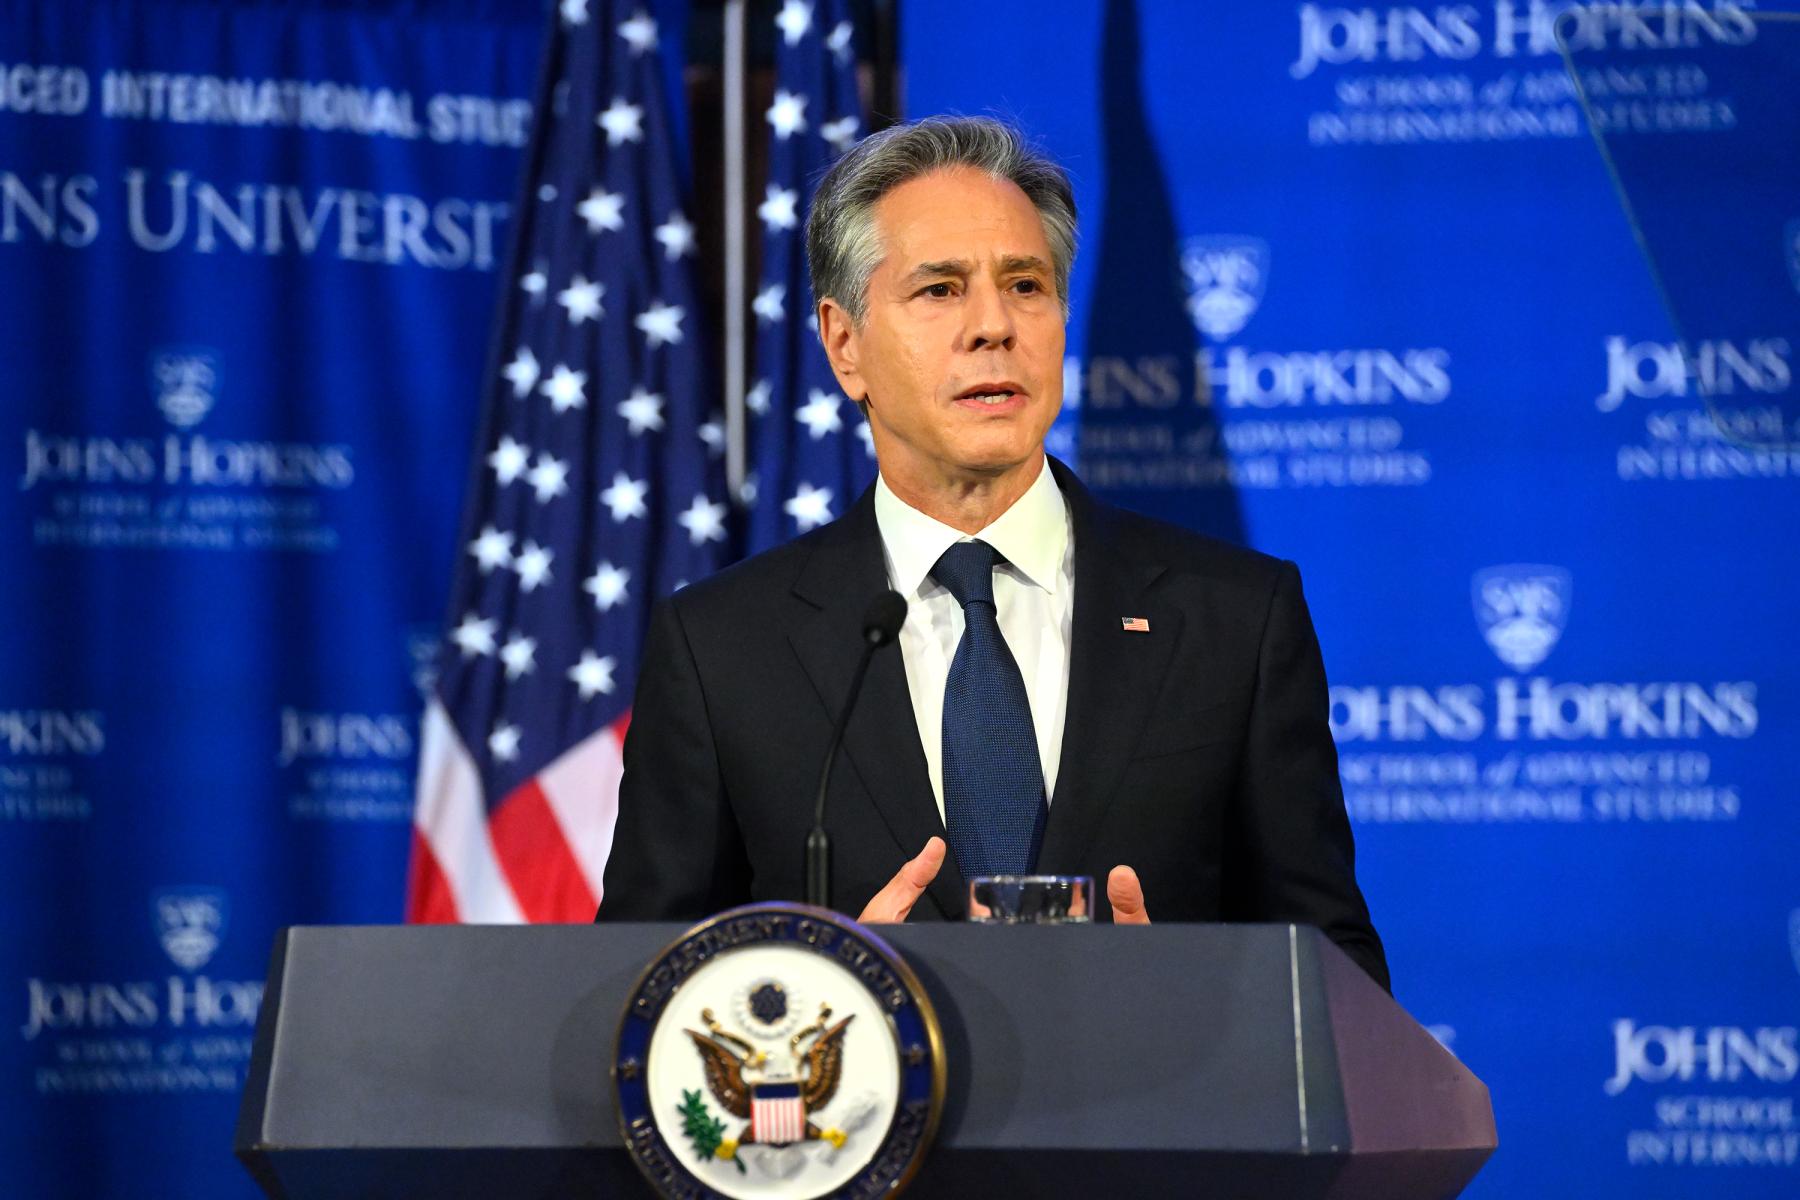 Blinken makes the case for American diplomacy in Johns Hopkins SAIS address